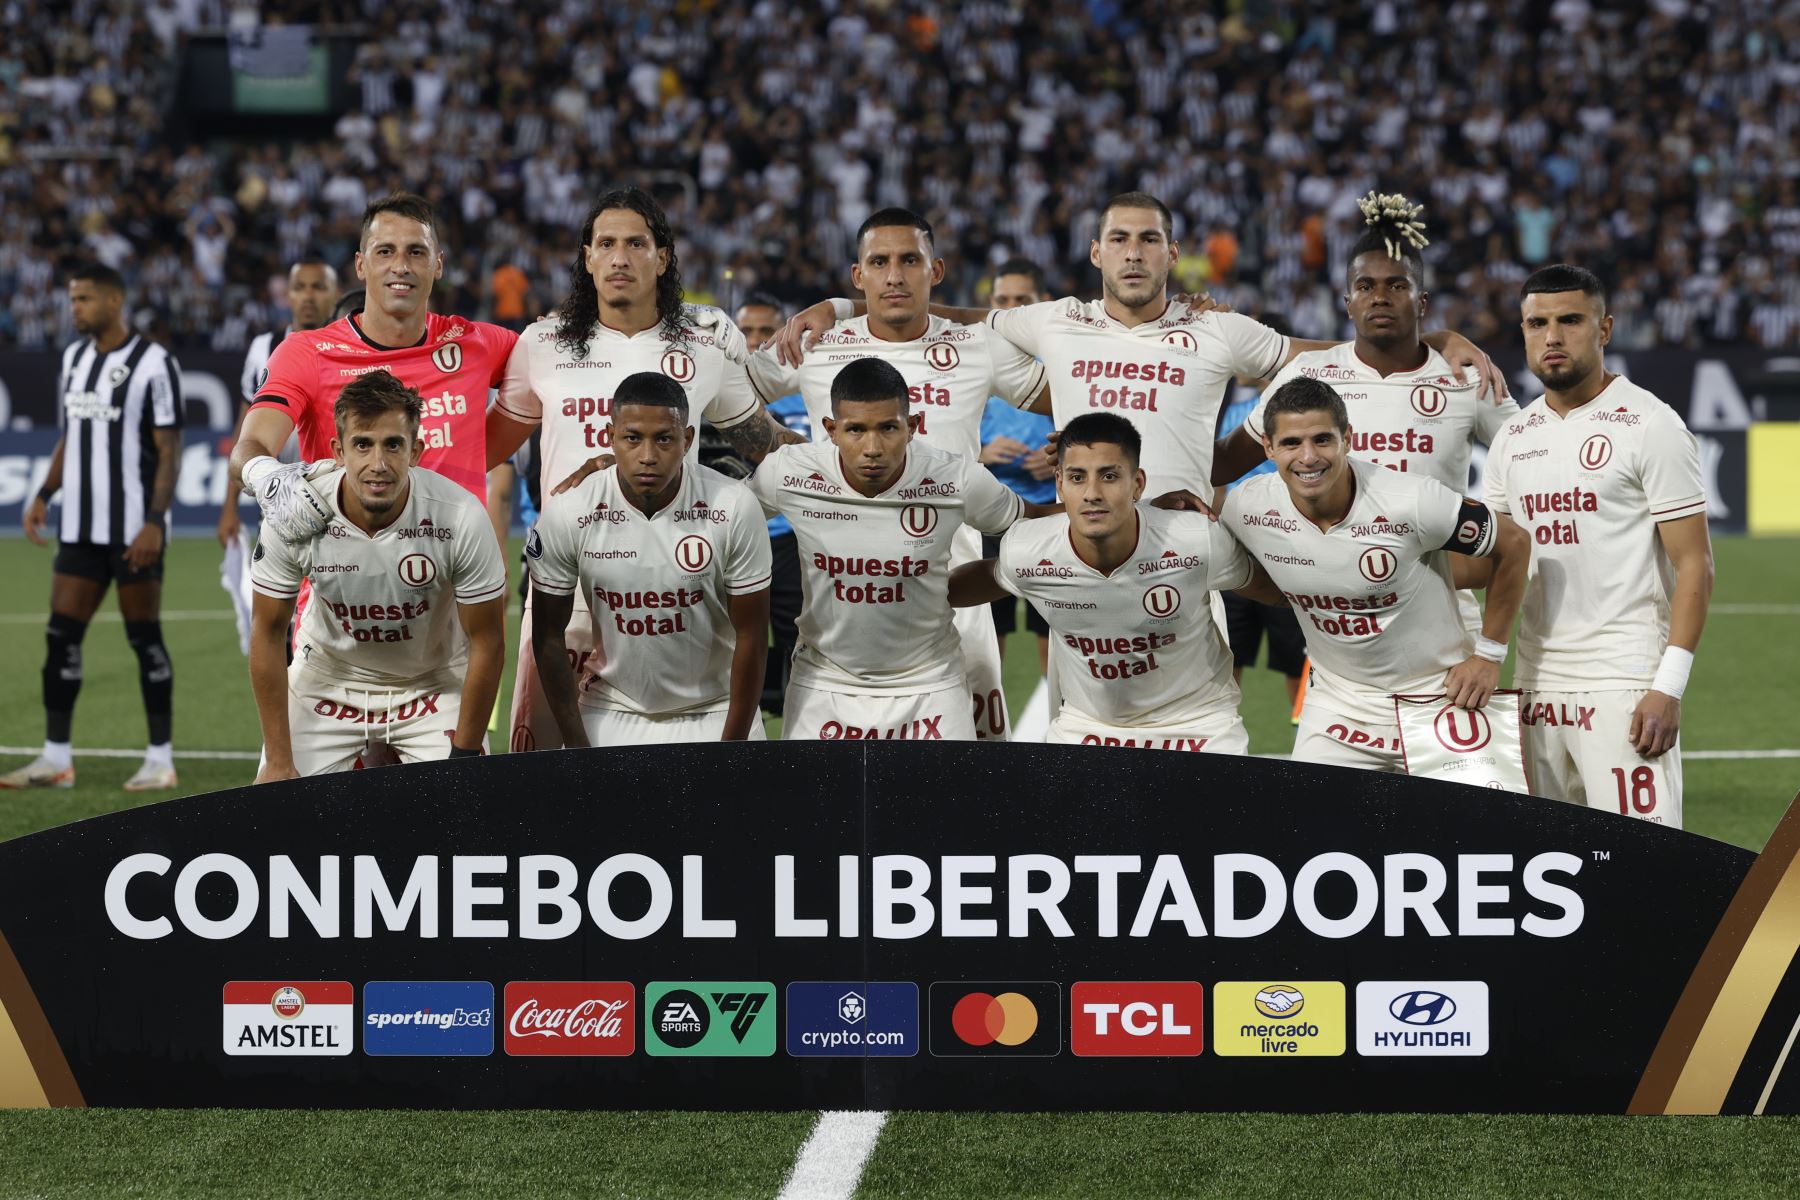 Jugadores de Universitario posan en un partido de la fase de grupos de la Copa Libertadores entre Botafogo y Universitario este miércoles, en el estadio Nilton Santos en Río de Janeiro (Brasil). EFE/ Antonio Lacerda